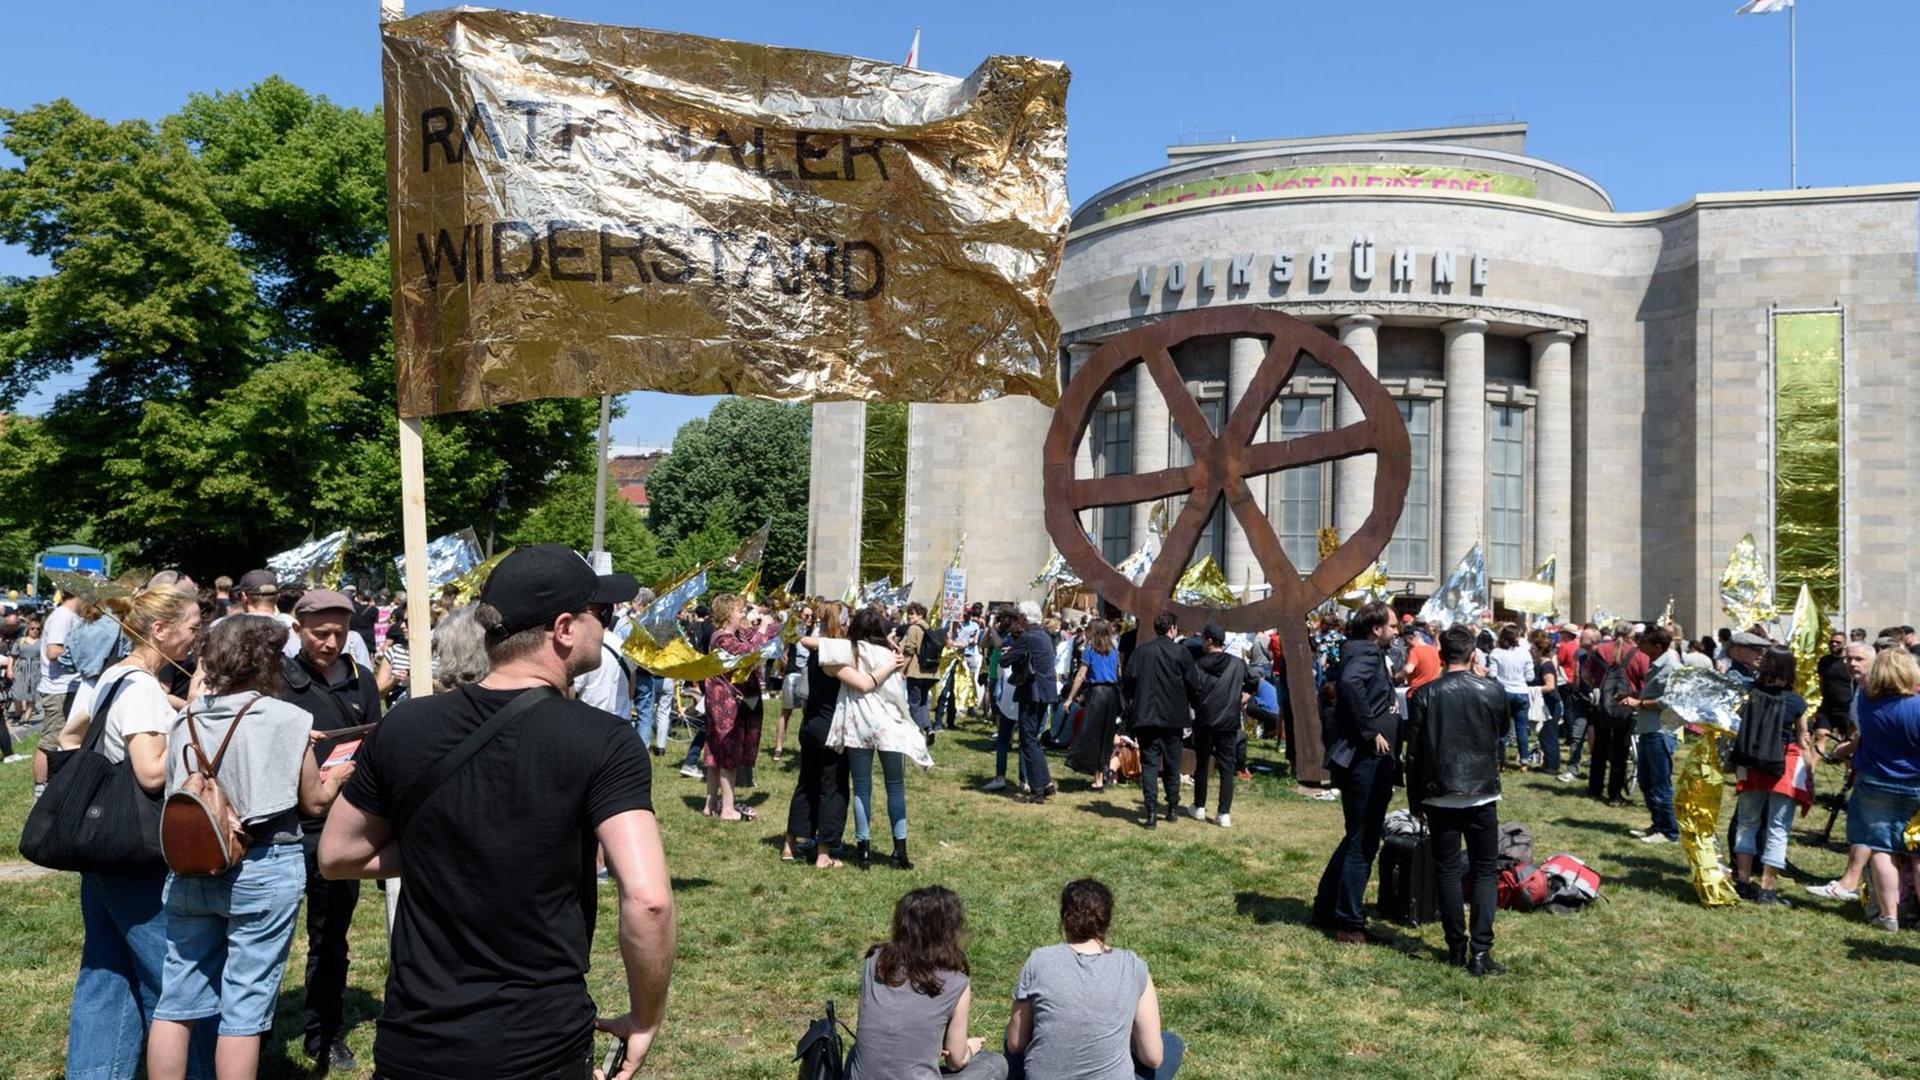 Eine Menschenmenge steht bei einer Großdemo in Berlin gegen Nationalismus am 19 Mai 2019 vor dem Gebäude der Volksbühne. Zu sehen ist auch das berühmte Räuberrad.